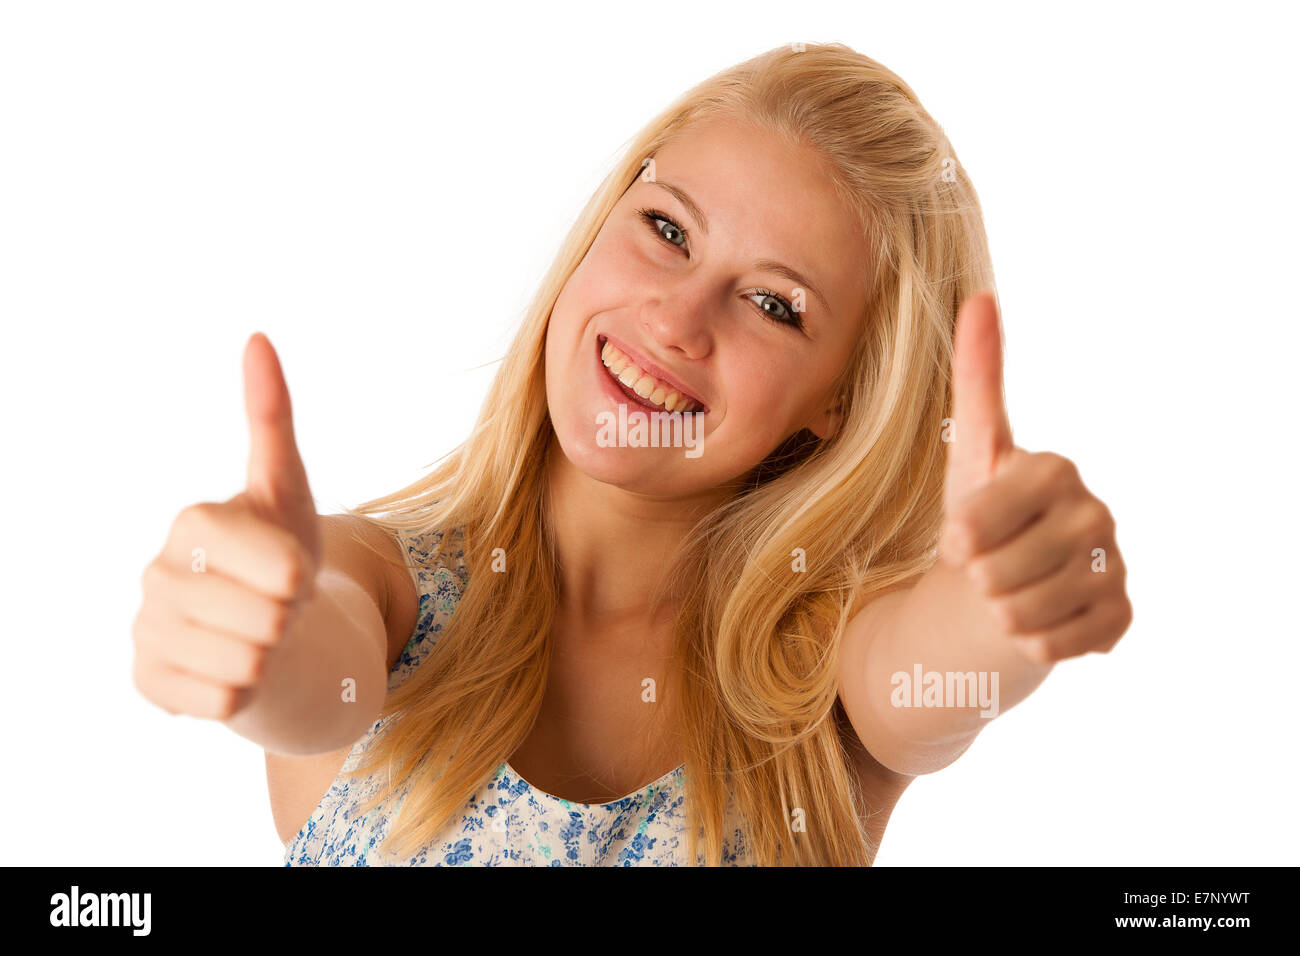 Jeune femme d'affaires aux cheveux blonds et aux yeux bleus gesturing succès showing thumb up isolated over white Banque D'Images